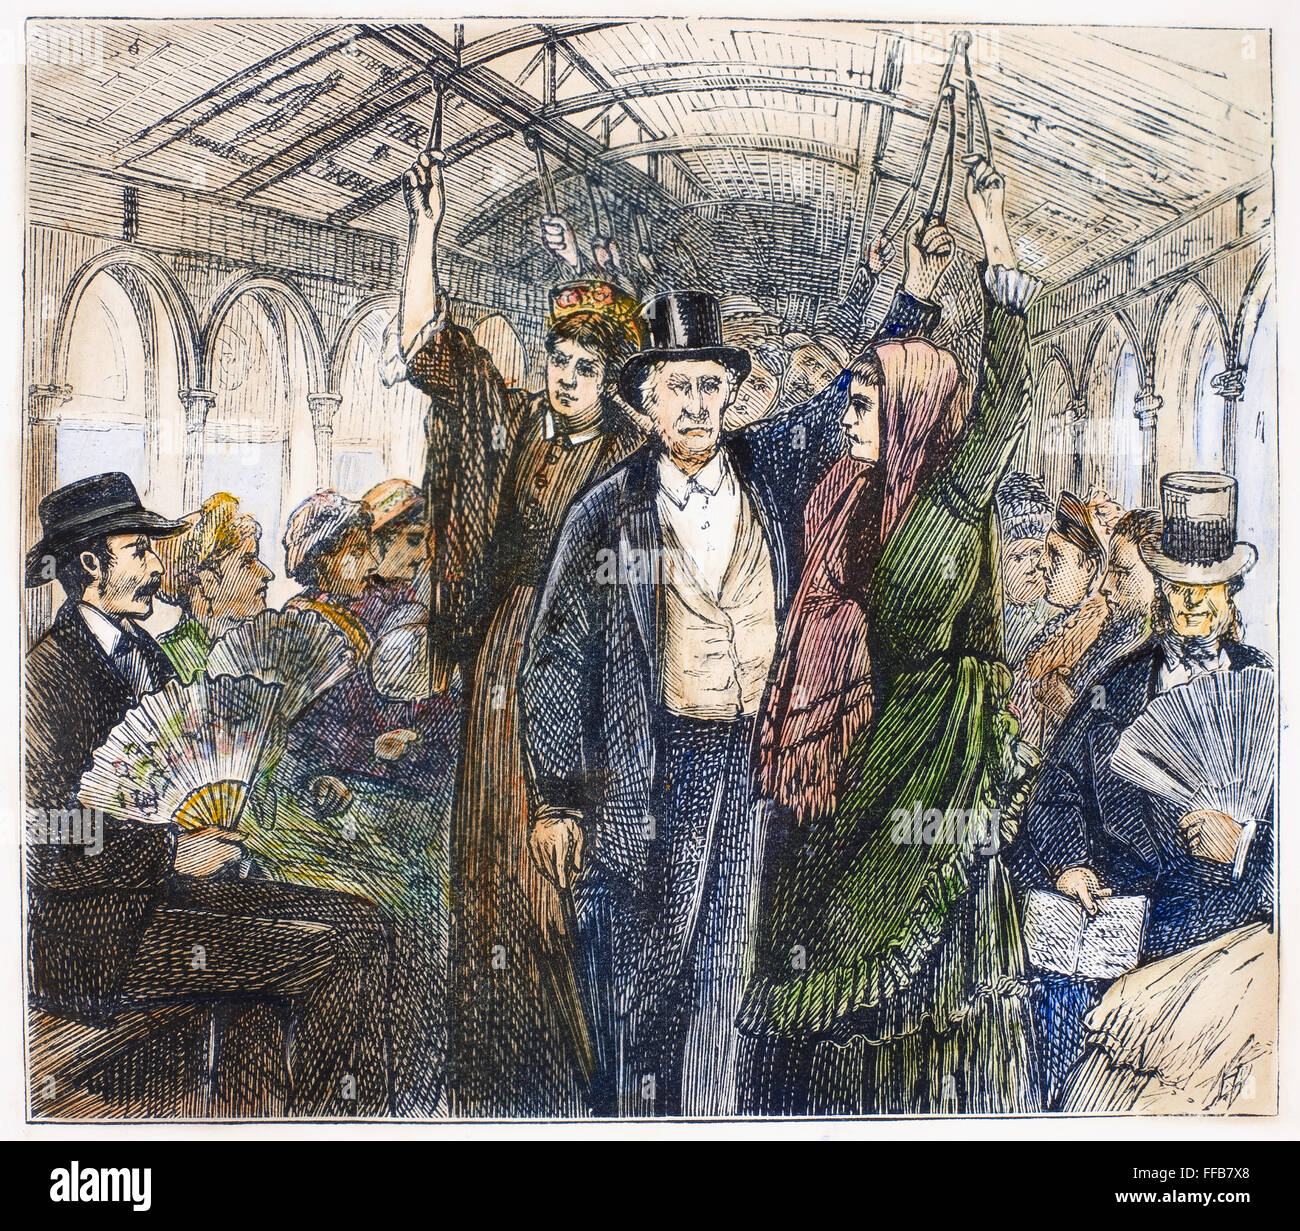 Le tramway, 1876. NInterior /d'un tramway. La gravure sur bois, anglais, 1876. Banque D'Images